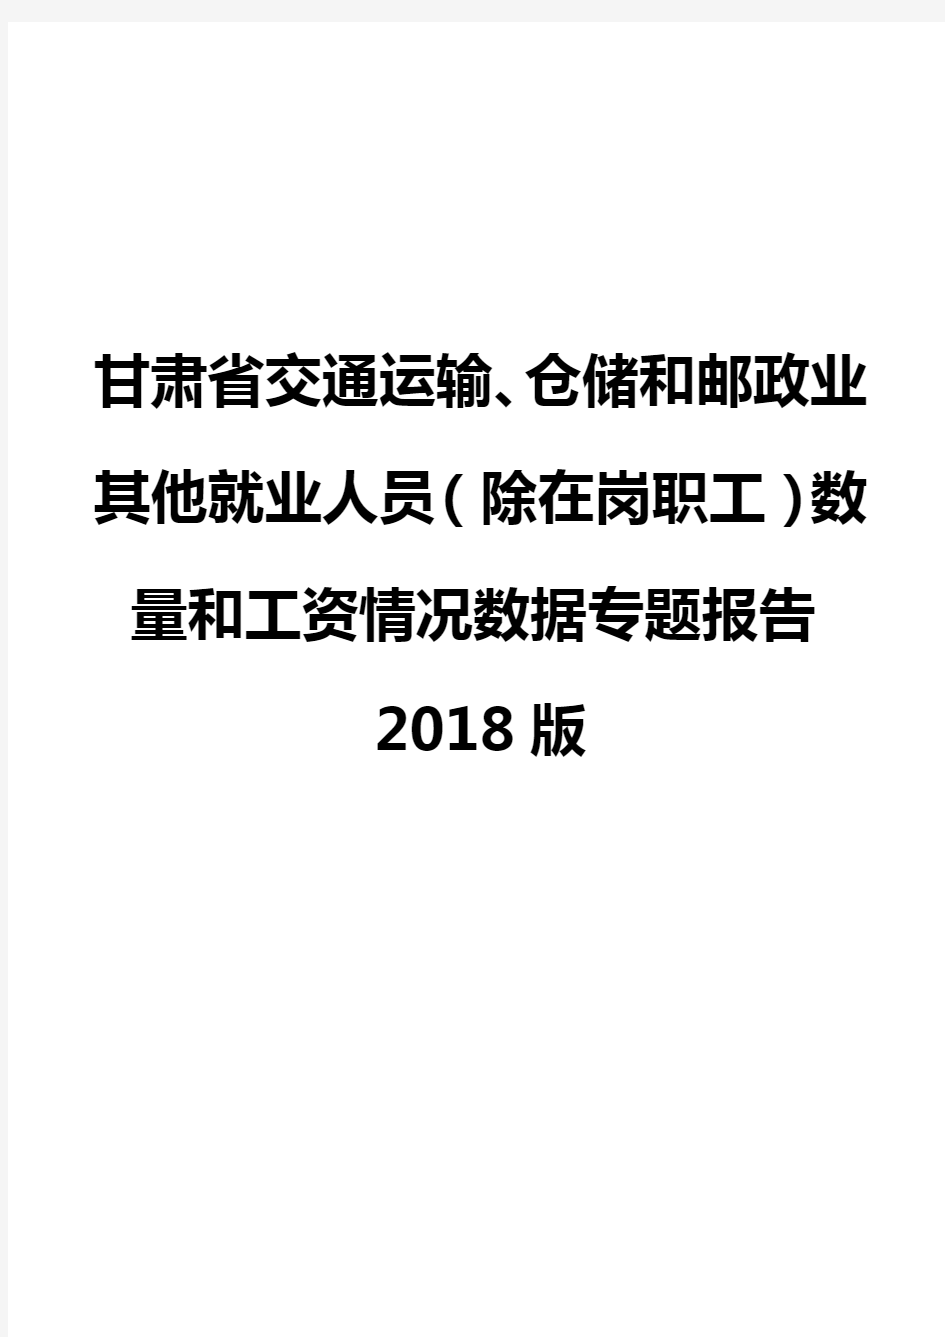 甘肃省交通运输、仓储和邮政业其他就业人员(除在岗职工)数量和工资情况数据专题报告2018版